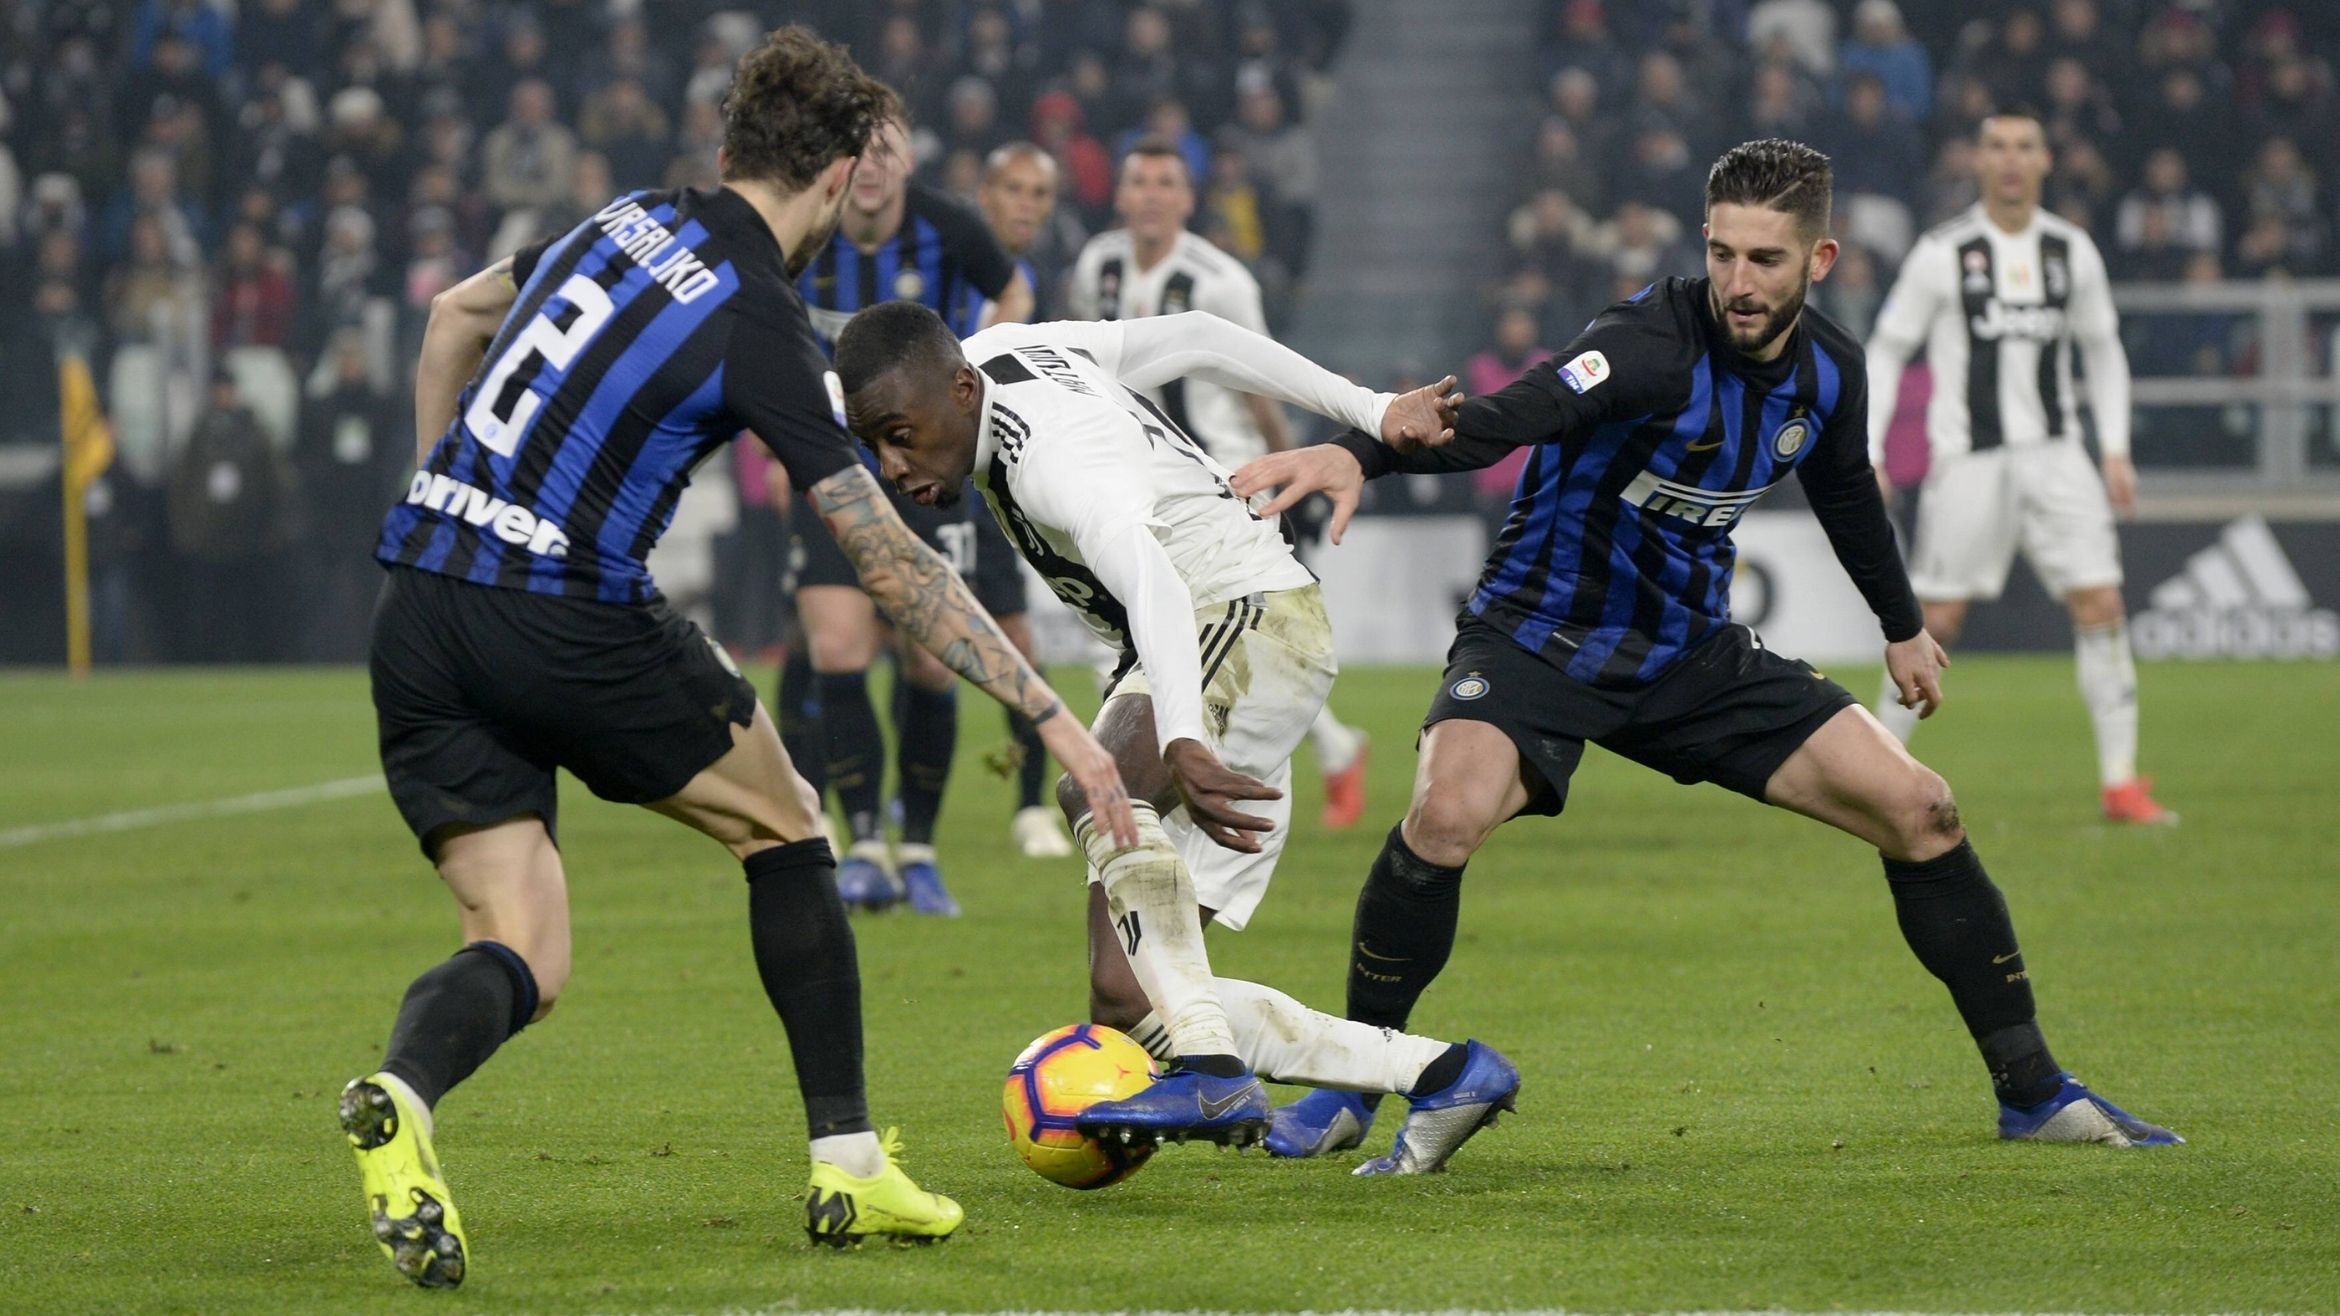 Italienisches Spitzenduell Juventus Turin gegen Inter Mailand in Turin im Dezember 2018 – 